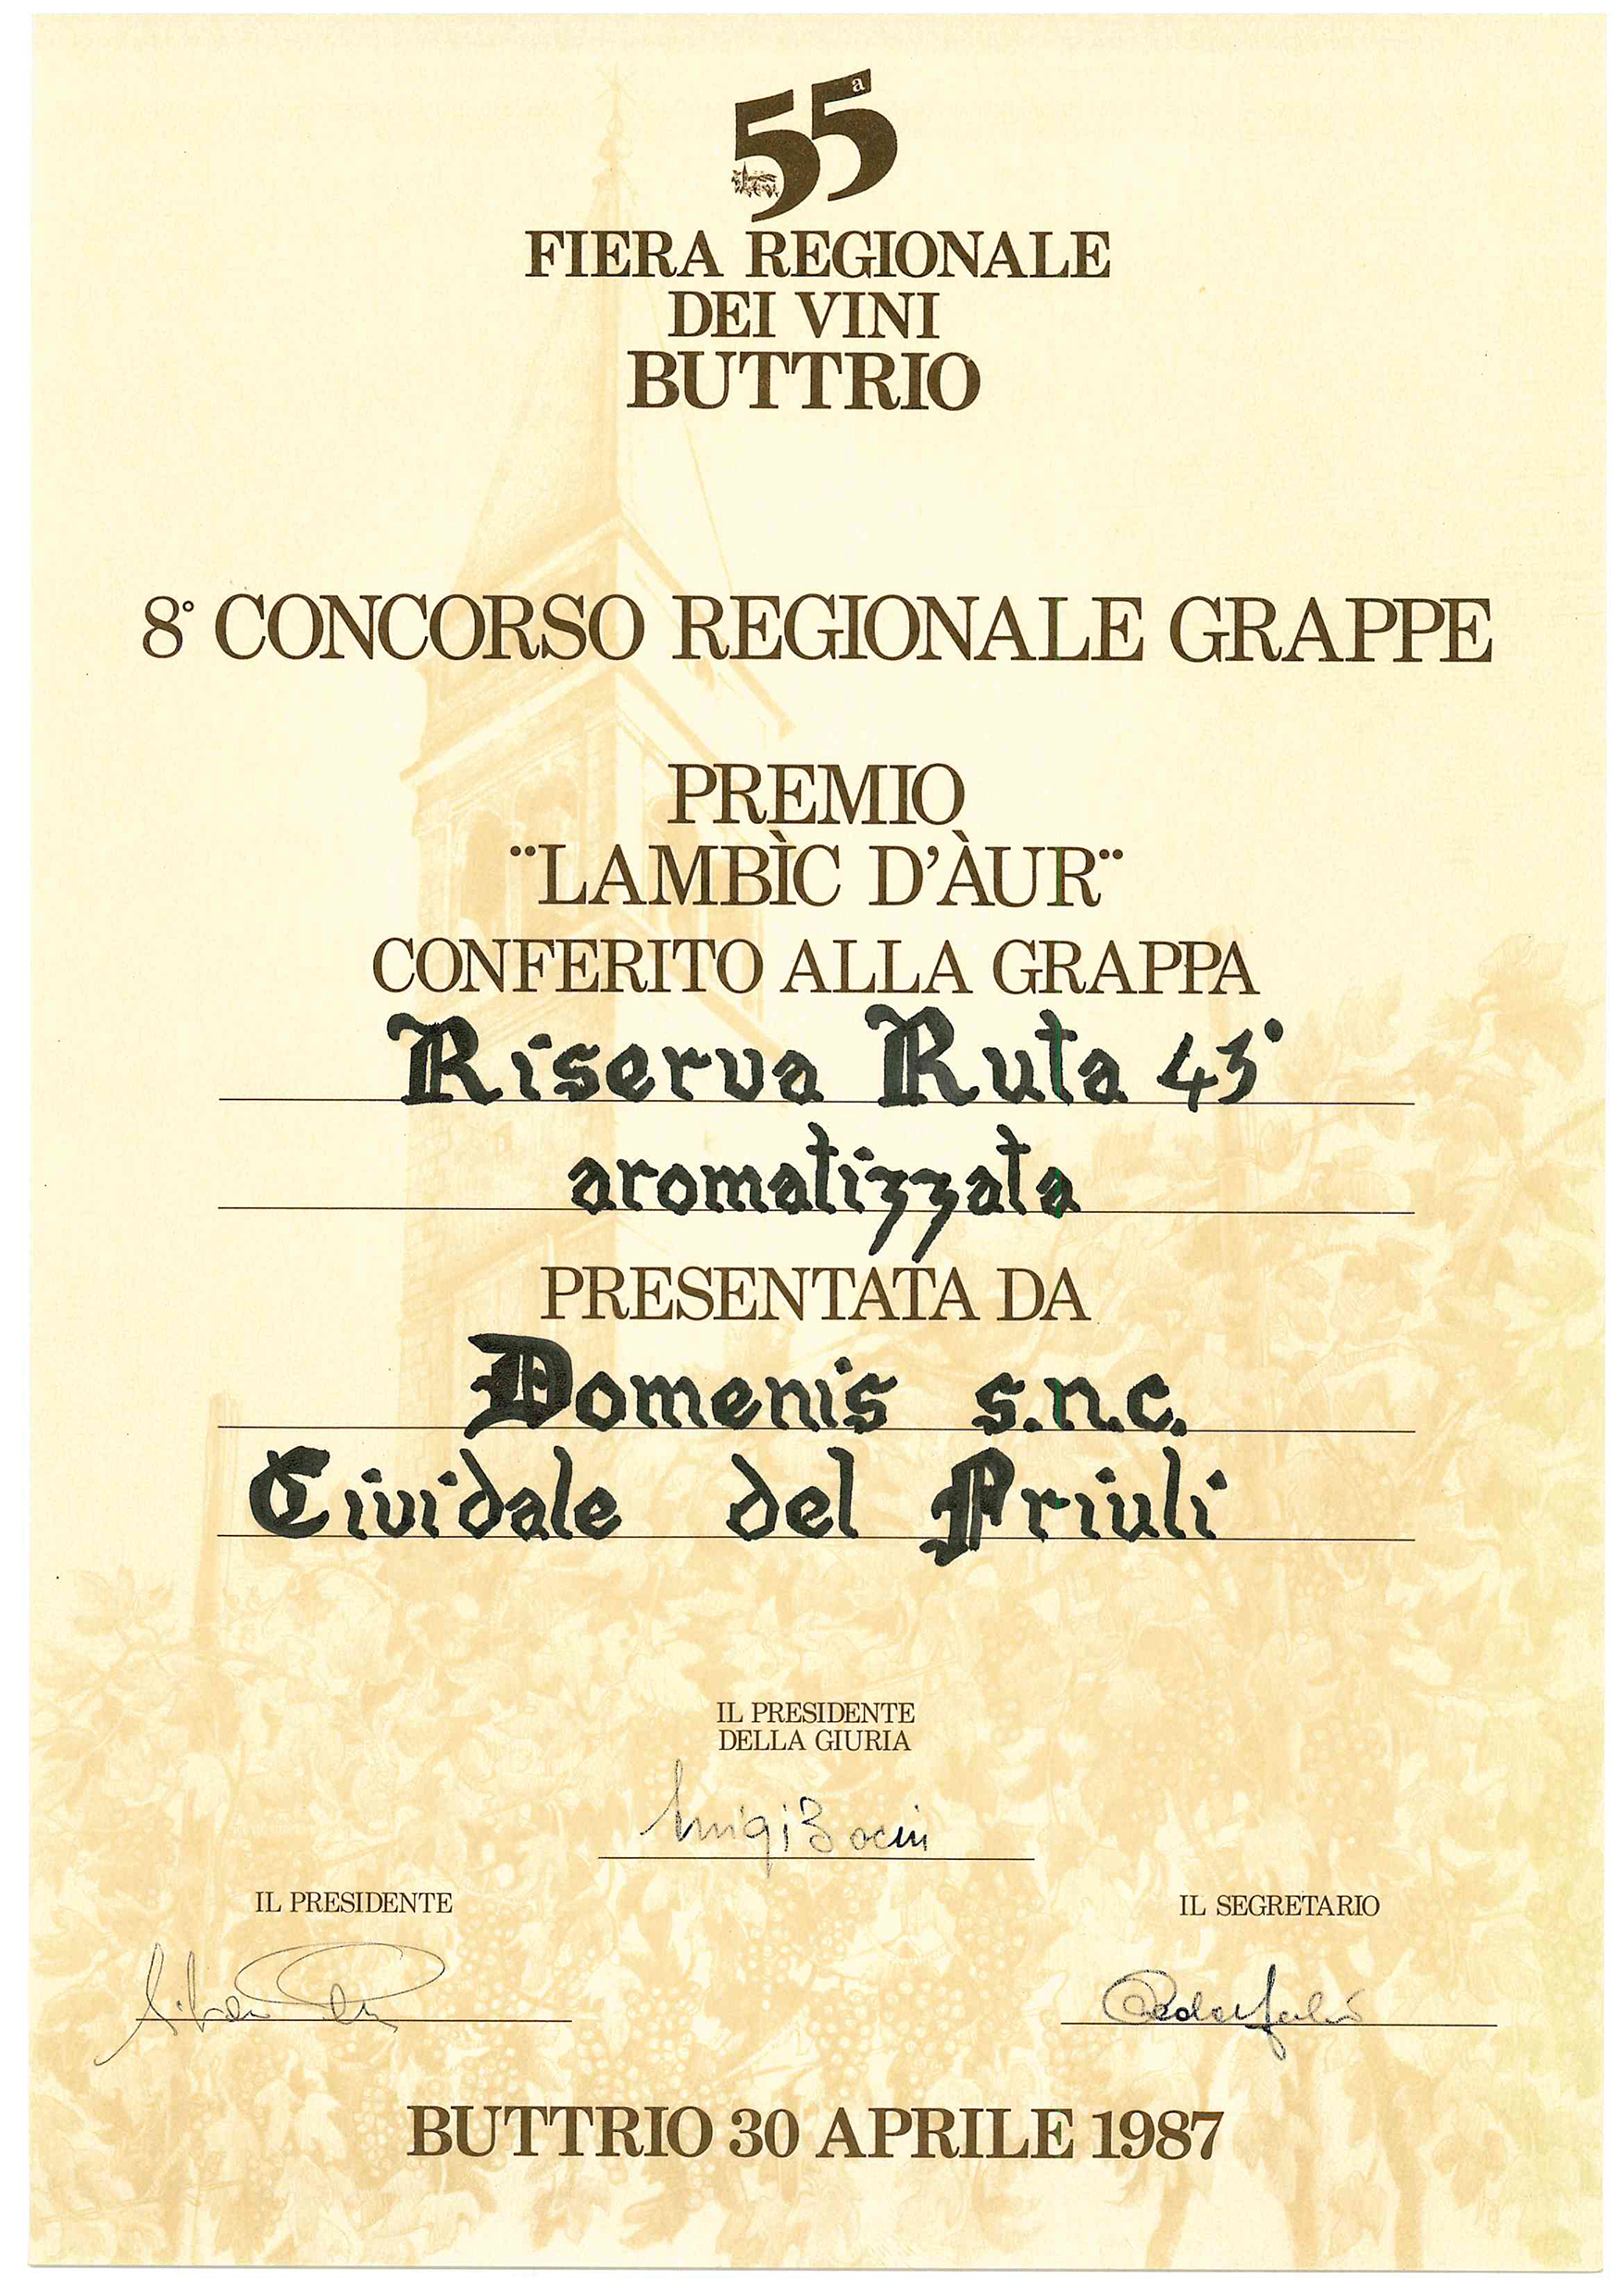 Fiera Regionale dei Vini di Buttrio 1987 – Grappa Riserva Ruta 43° aromatizzata